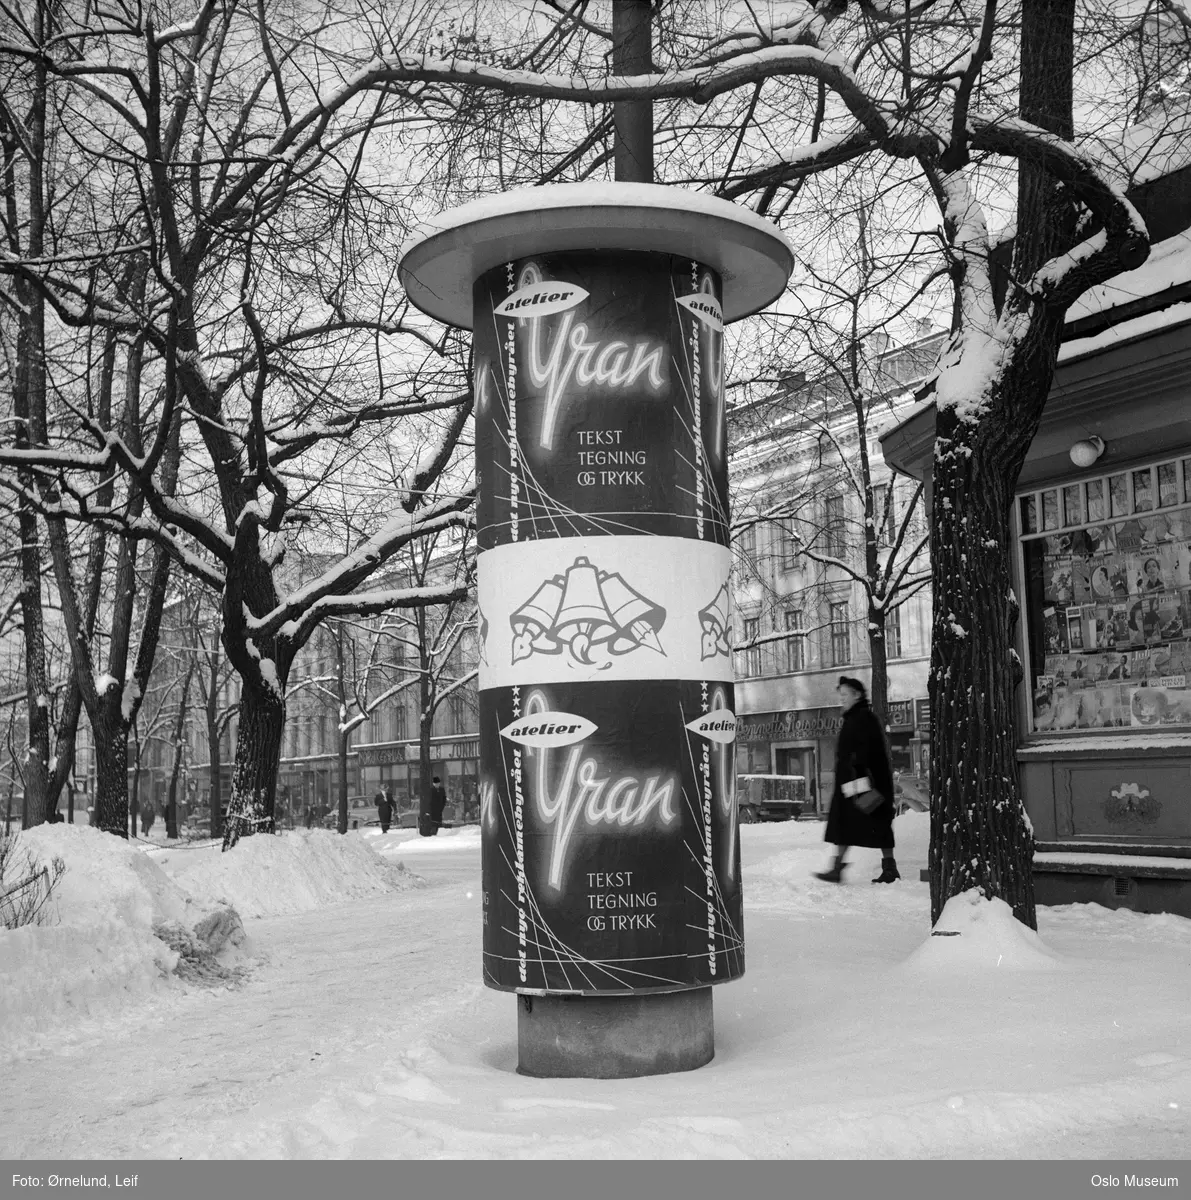 reklamesøyle, reklame for Atelier Yran, kiosk, forretningsgårder, kvinne, snø